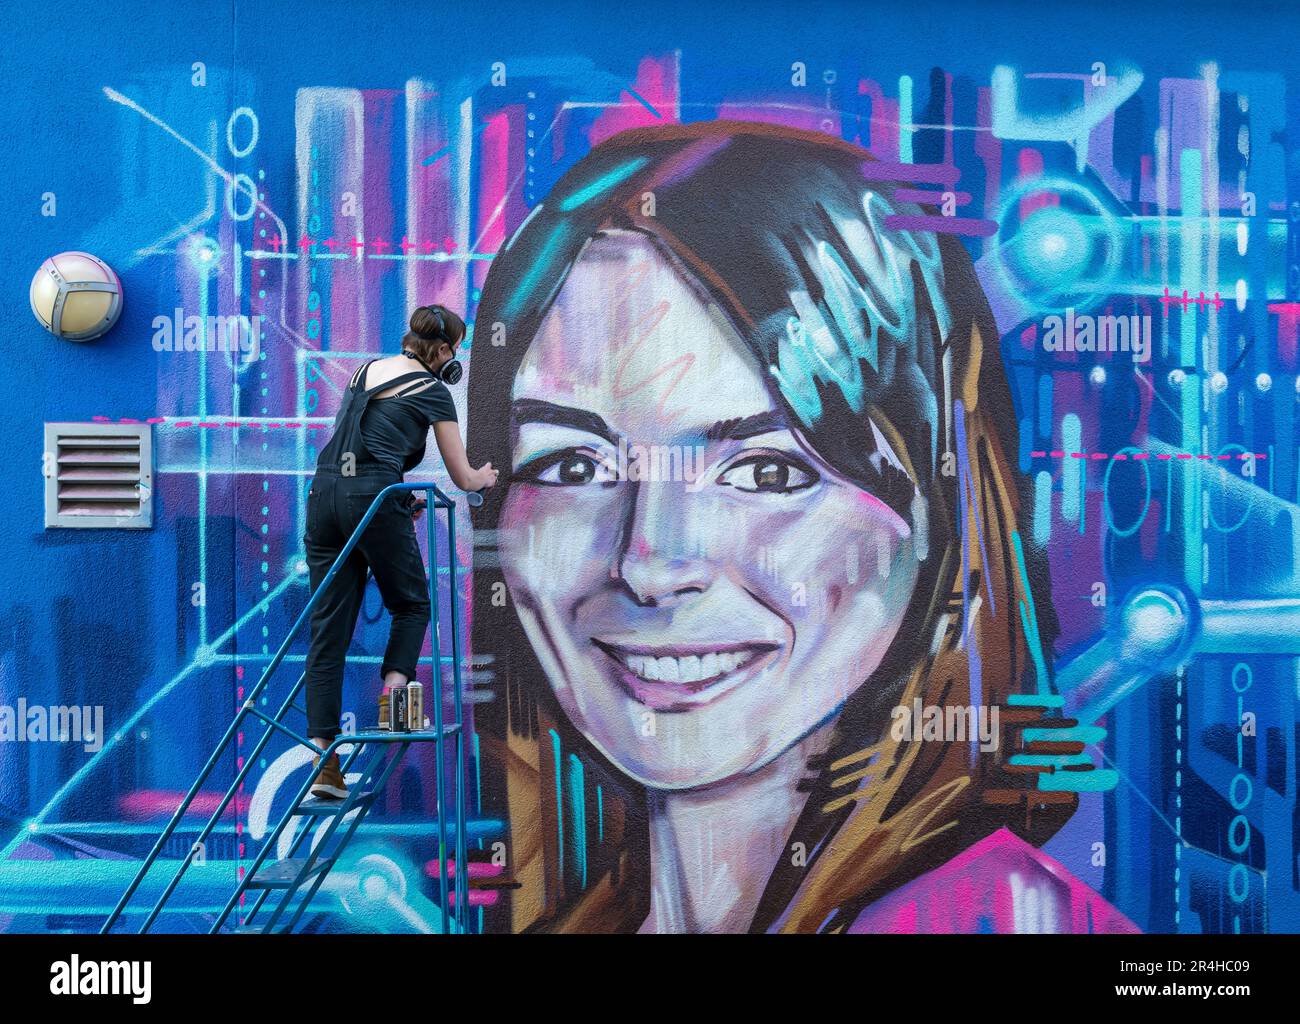 Graffiti-Wandgemälde von CEO Natalie Duffield zur Feier der Frauen in STEM-Spray, gemalt von Künstlerin Shona Hardie für das Edinburgh Science Festival, Schottland, Großbritannien Stockfoto